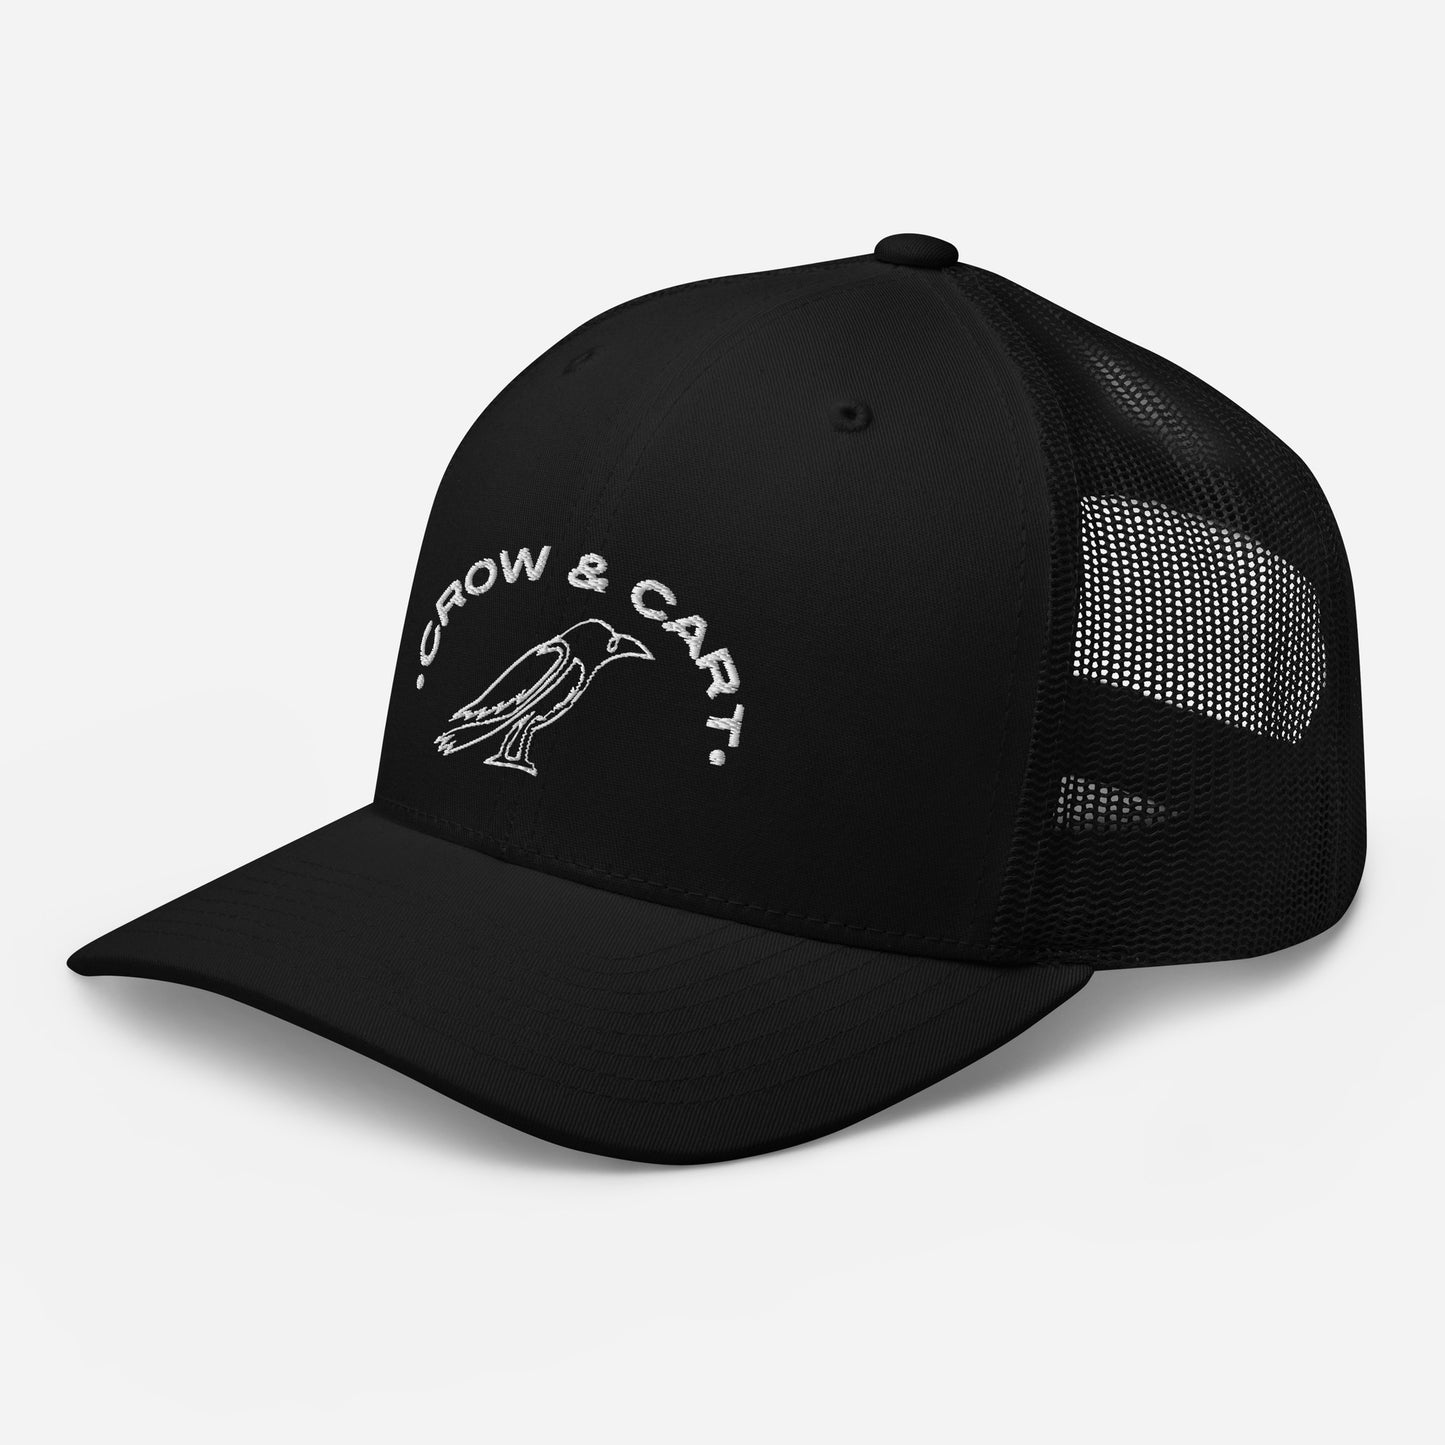 Crow & Cart Trucker Hat. White Stitching.